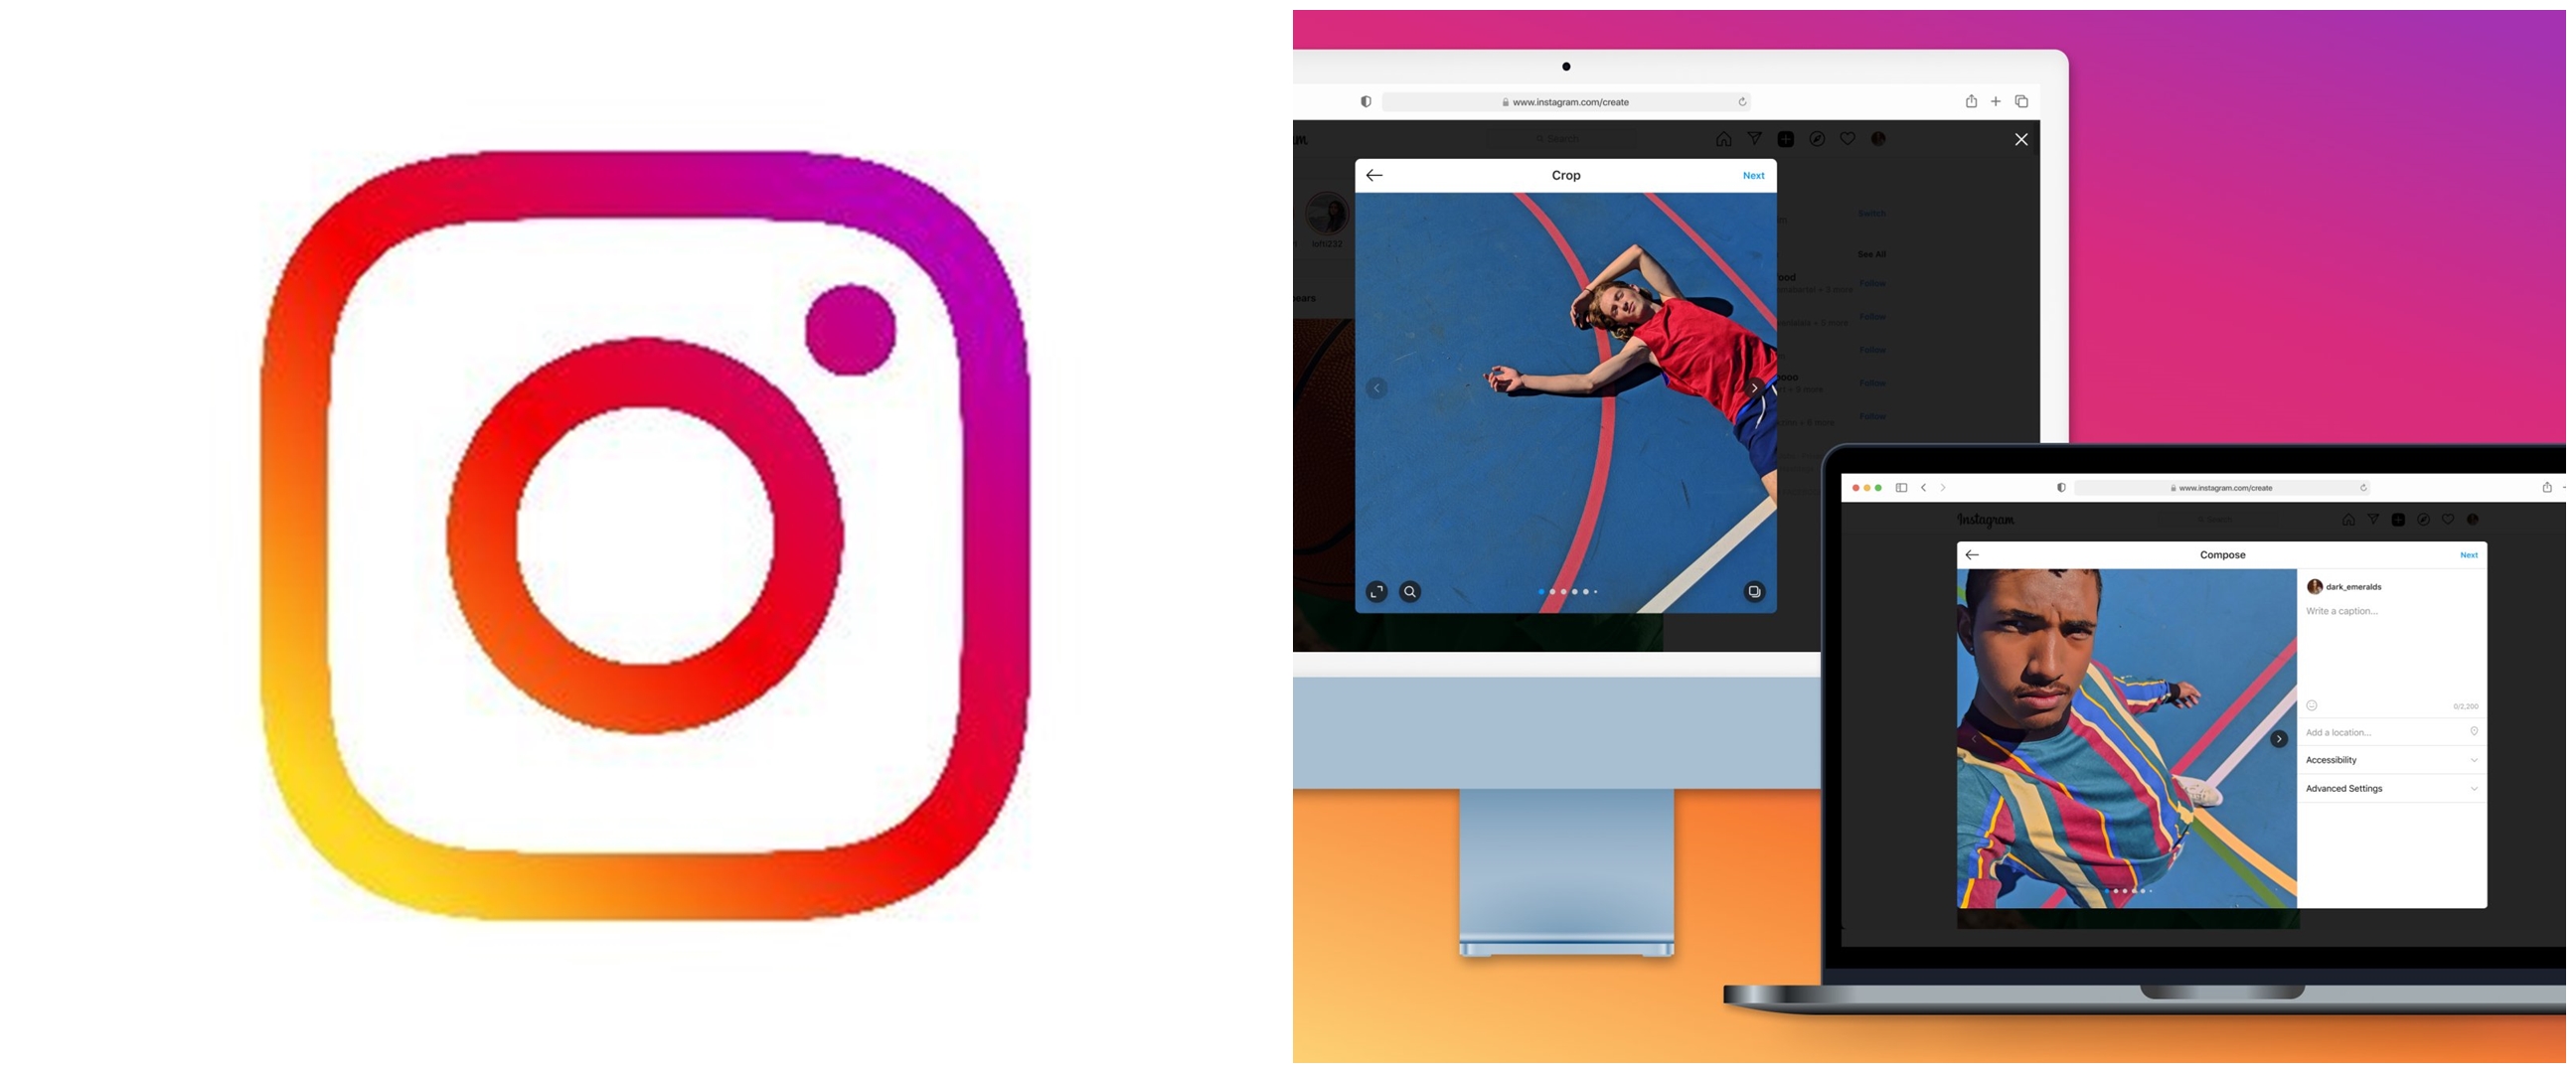 Cara upload foto dan video di Instagram lewat laptop